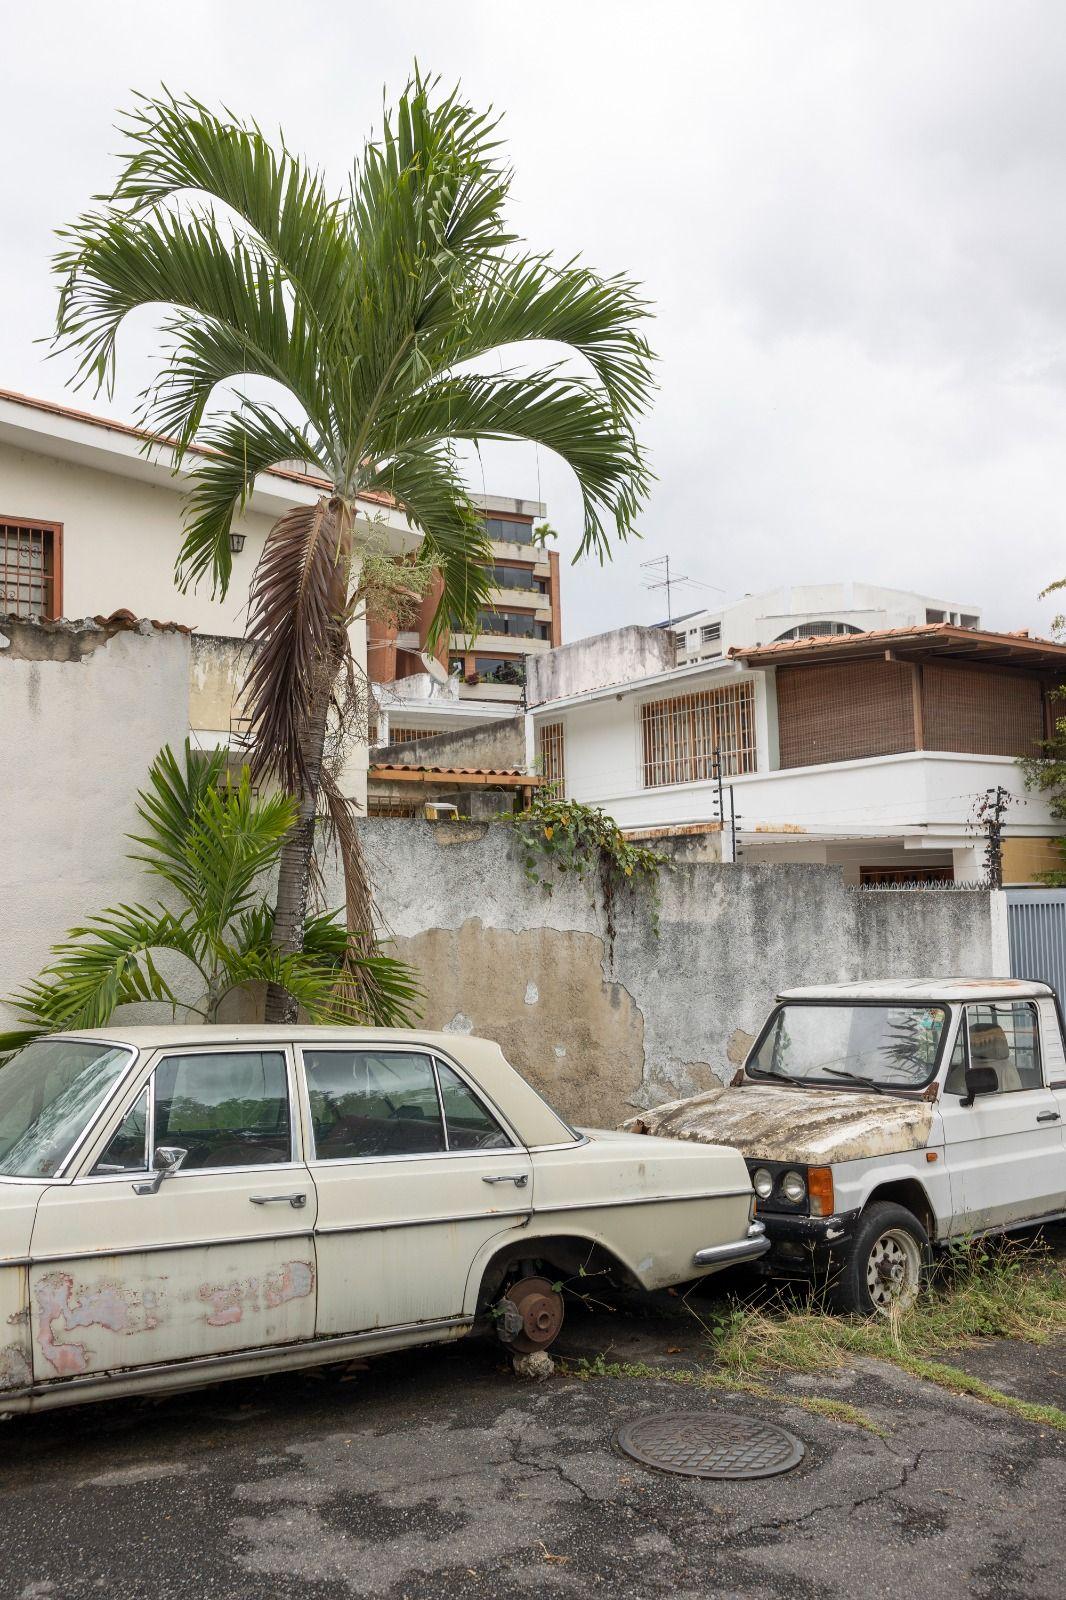 Carros abandonados en un vecindario clase media en Caracas, el 27 de abril de 2022